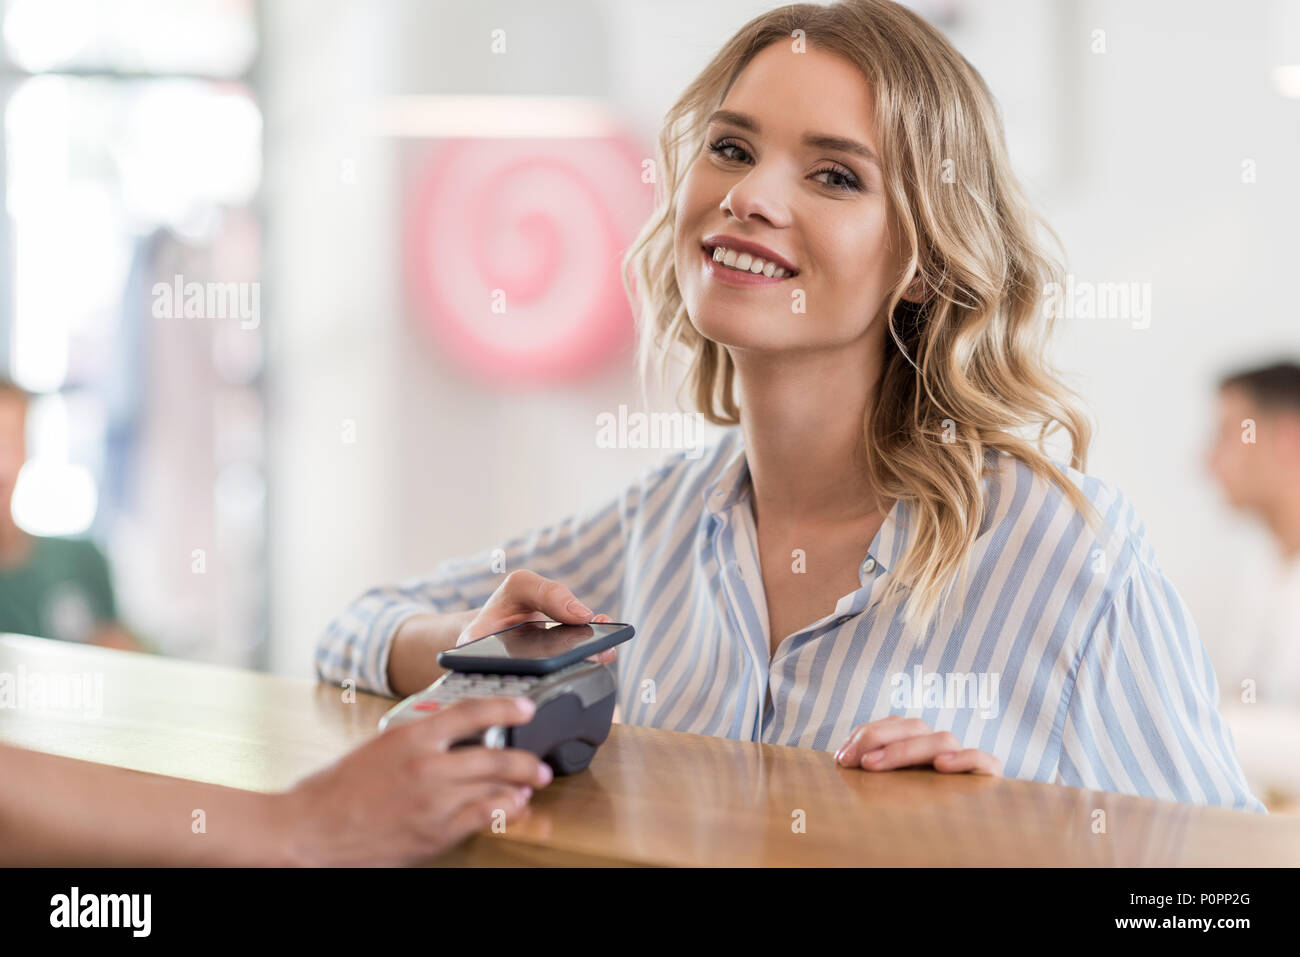 Portrait of beautiful smiling woman using smartphone pour paiement en cafe Banque D'Images